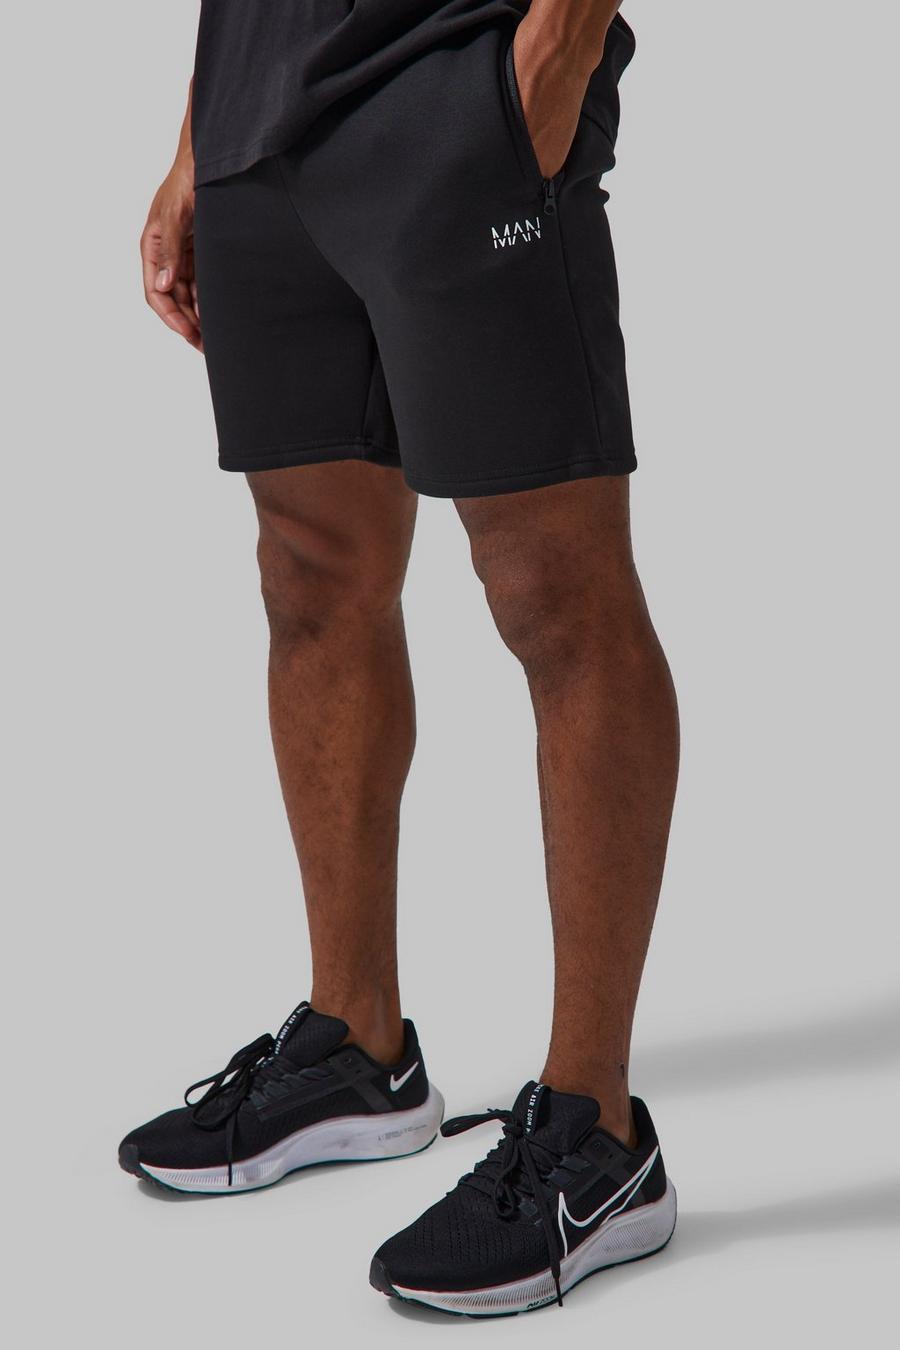 Pantalón corto MAN Active deportivo ajustado al músculo, Black image number 1